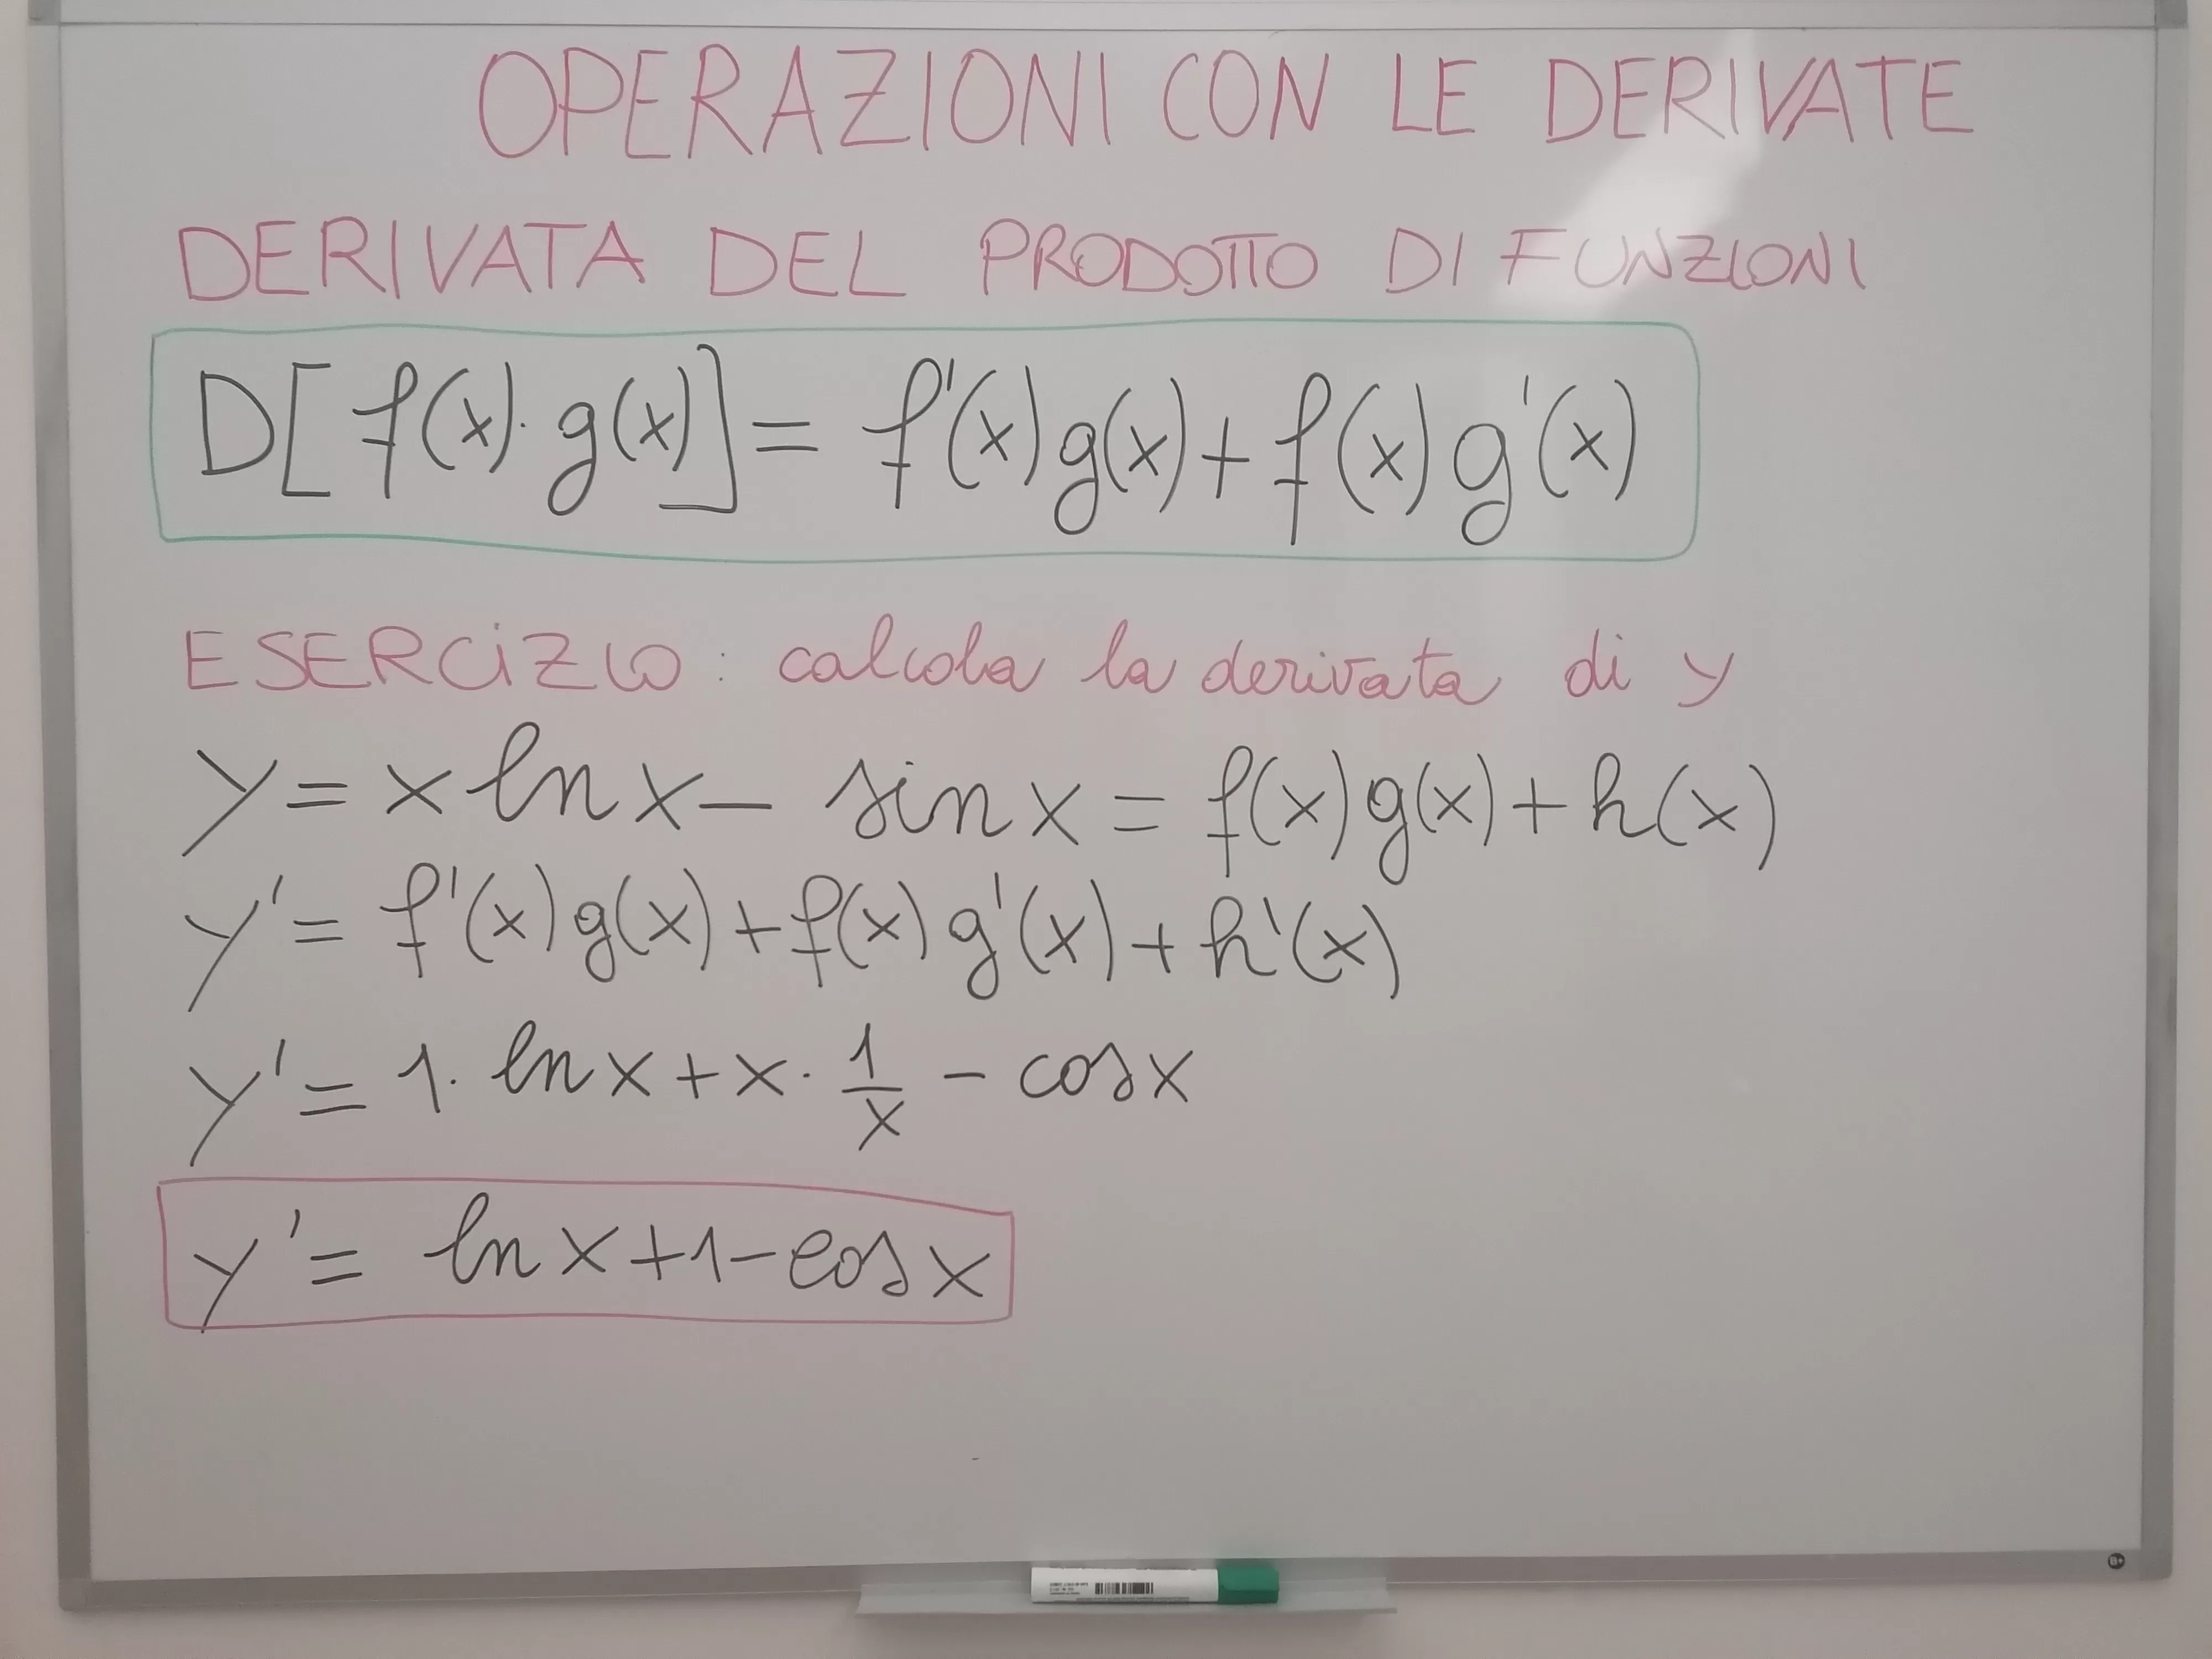 Esercizio calcola la derivata di y=x ln(x) - sin(x) 